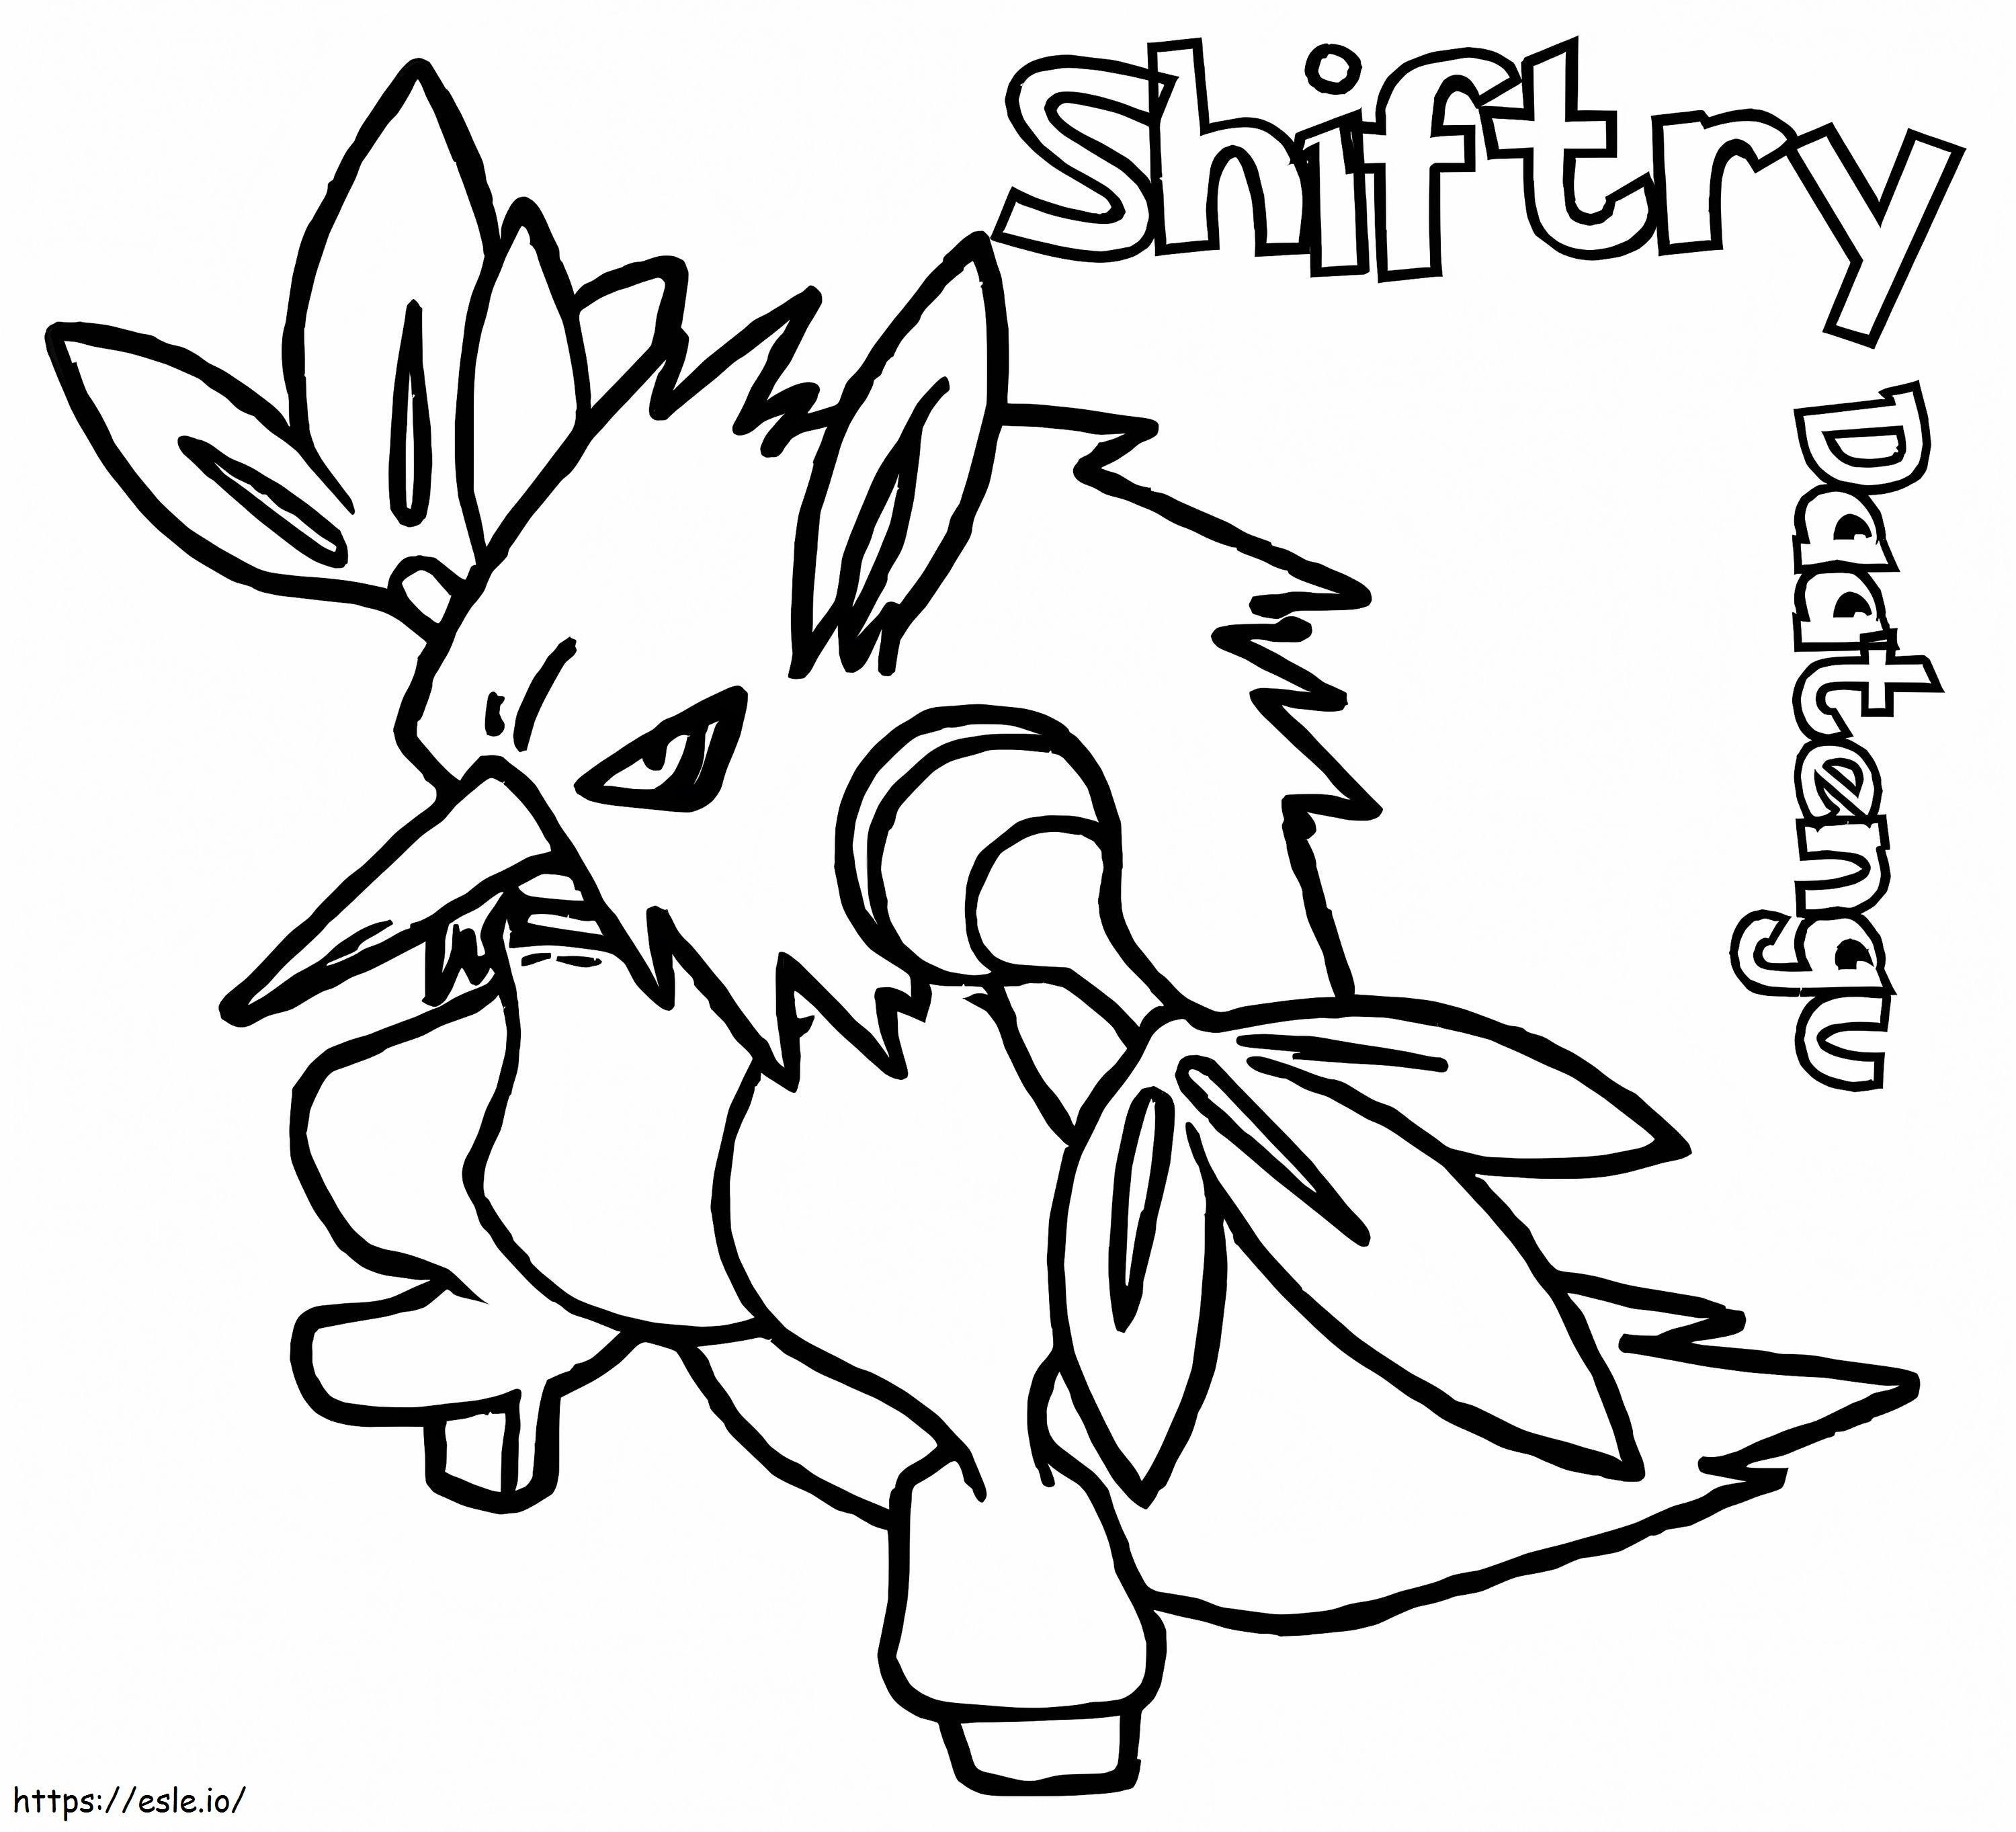 Coloriage Pokémon Shiftry imprimable à imprimer dessin